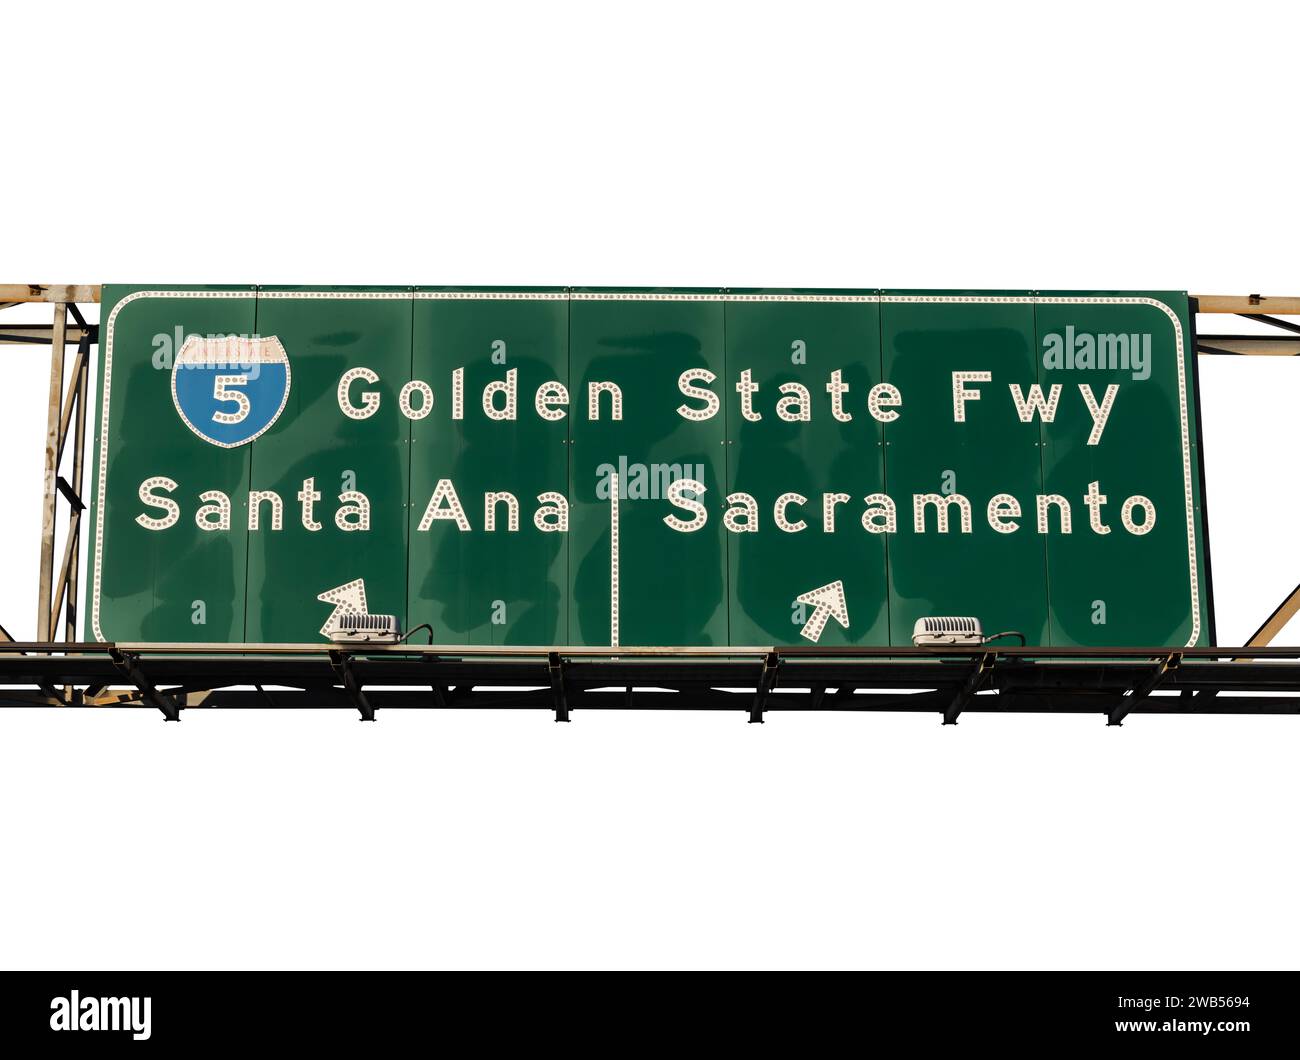 Segui l'Interstate 5 della Golden State Freeway per Santa Ana o Sacramento a Los Angeles, California. Sfondo ritagliato. Foto Stock